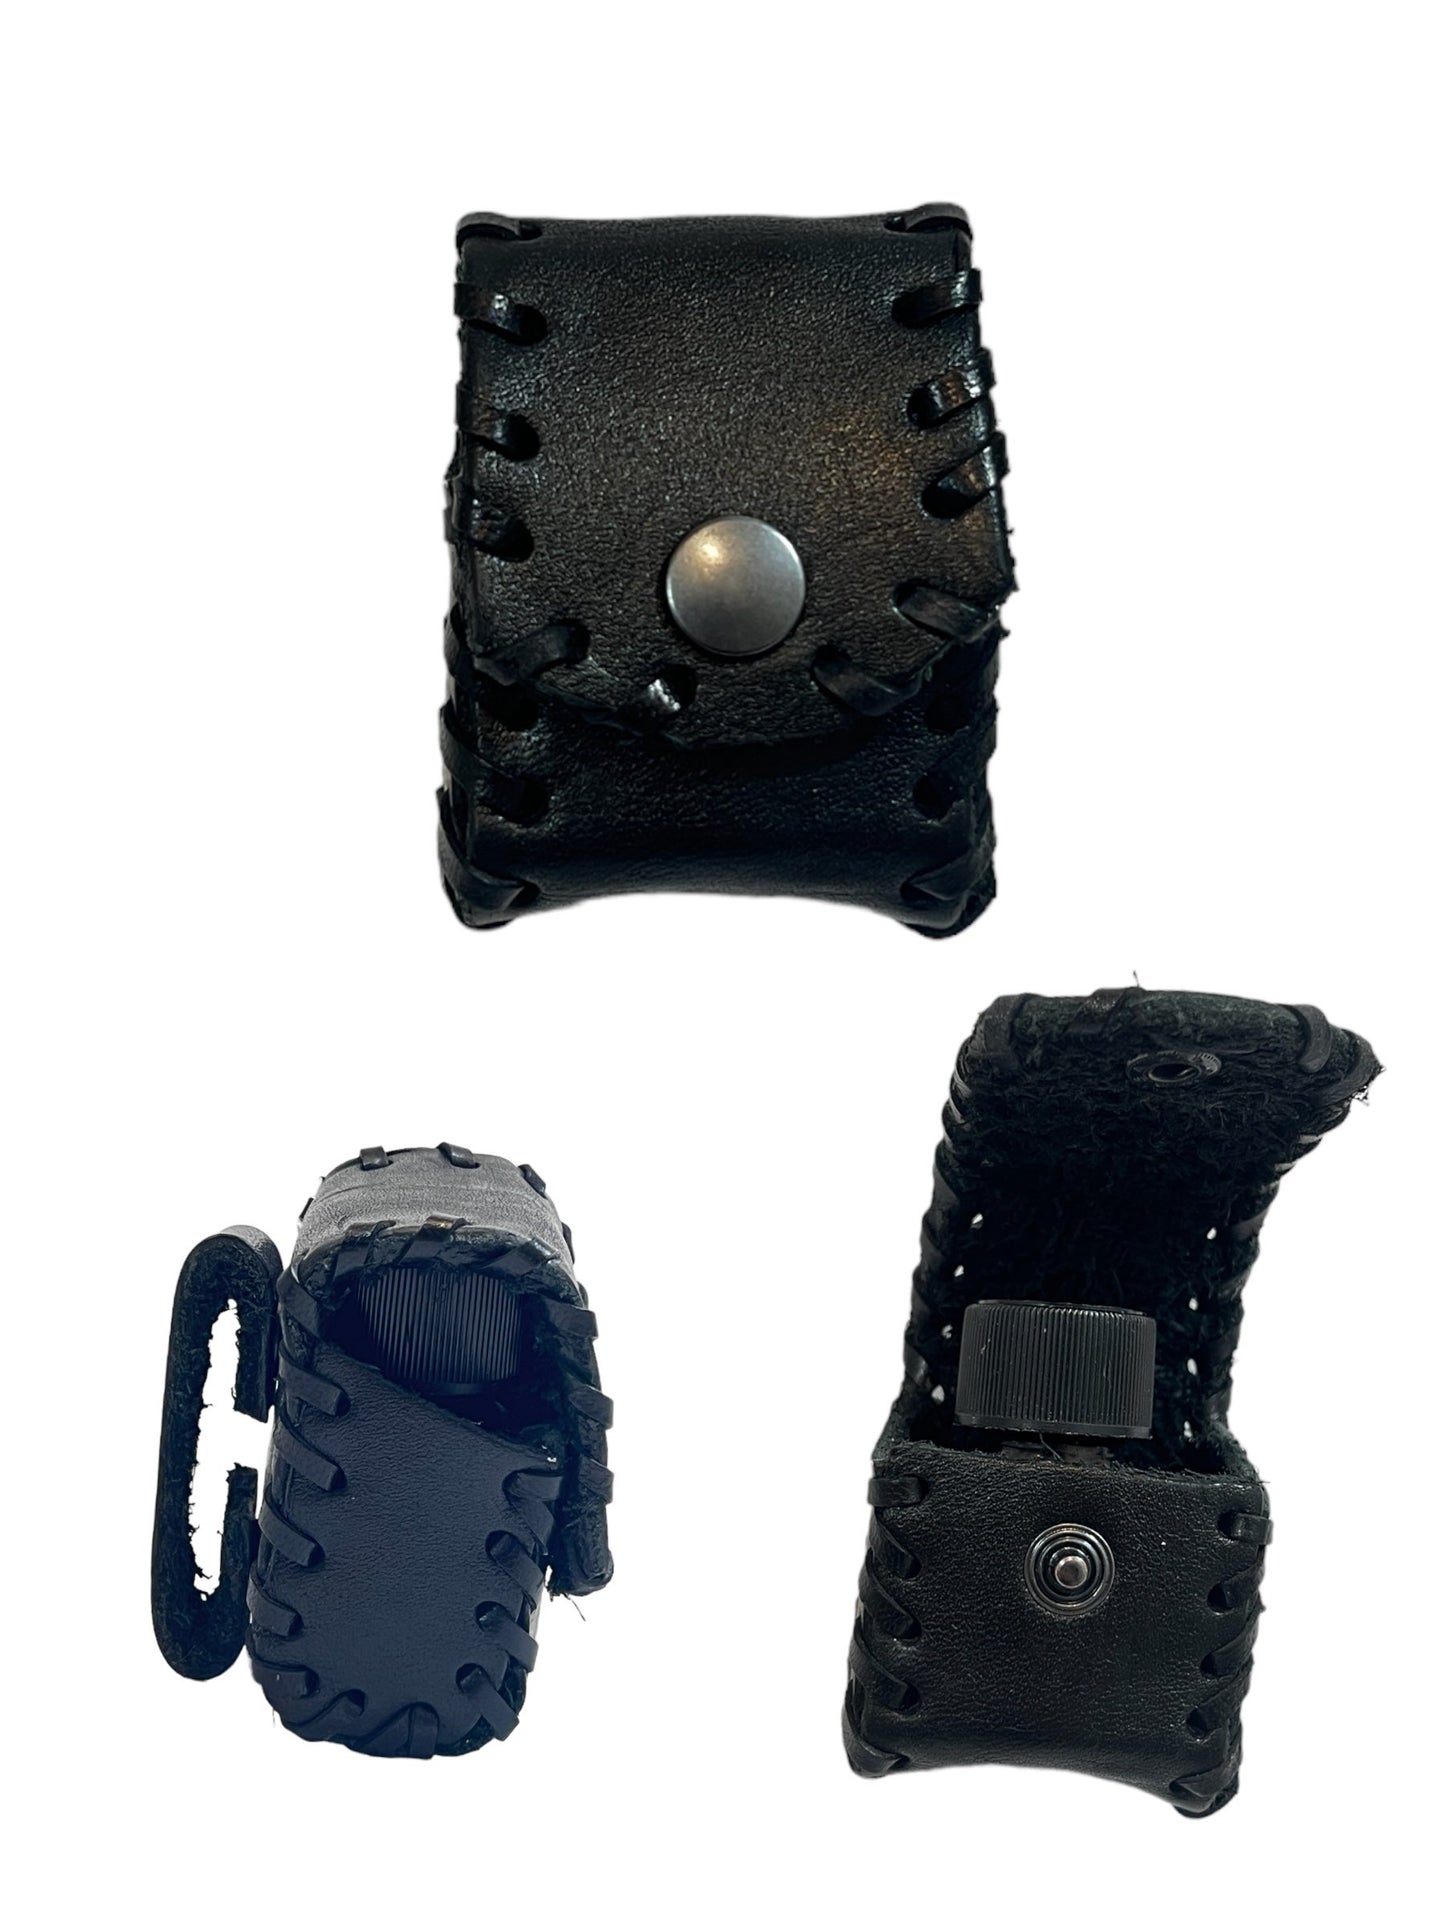 Bolsos poppers de fabricación sueca, un práctico bolso pequeño para poppers de piel auténtica.